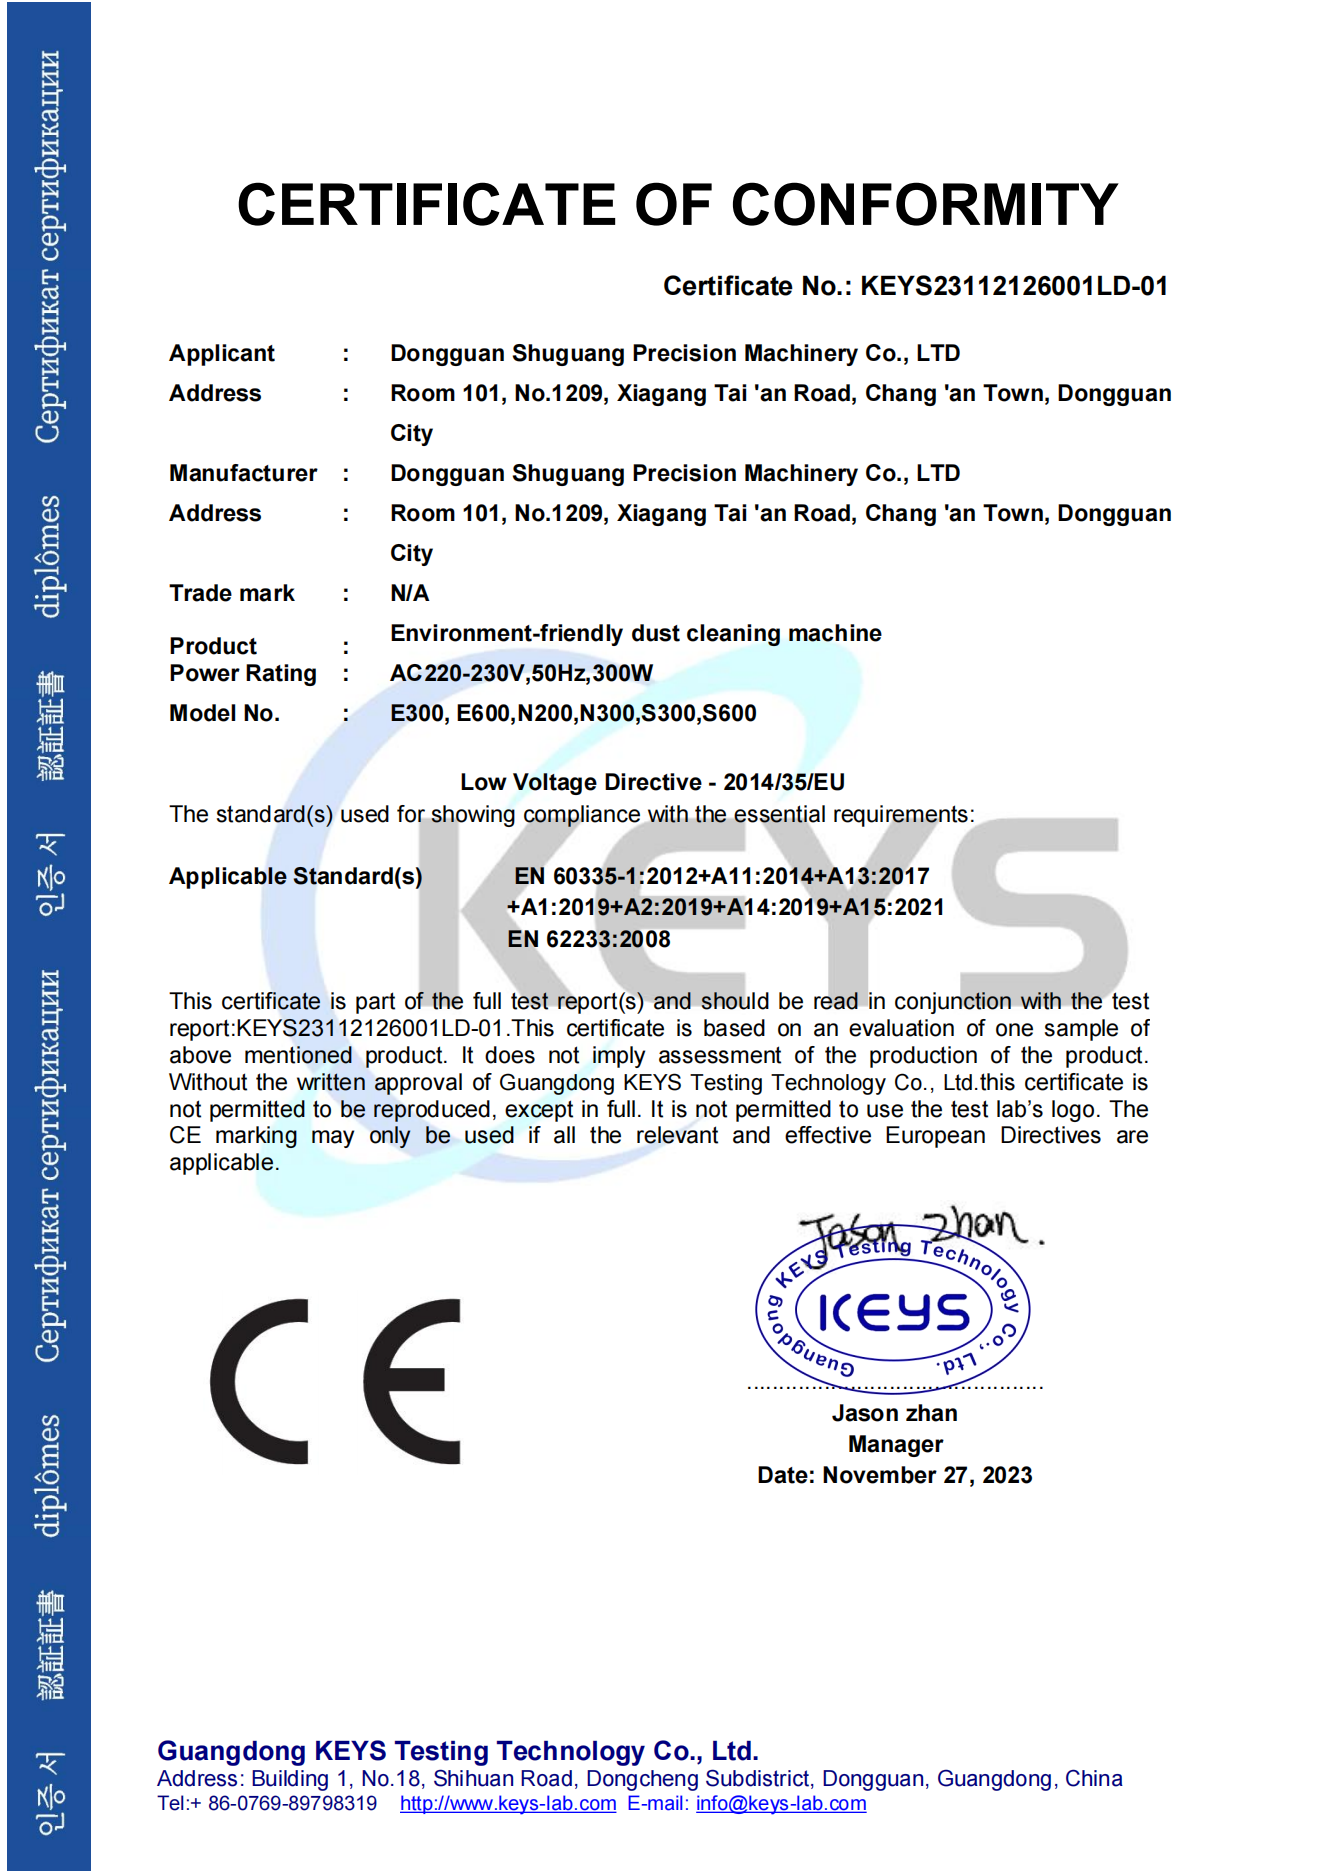 喜提环保型吸尘净化机CE-LVD认证